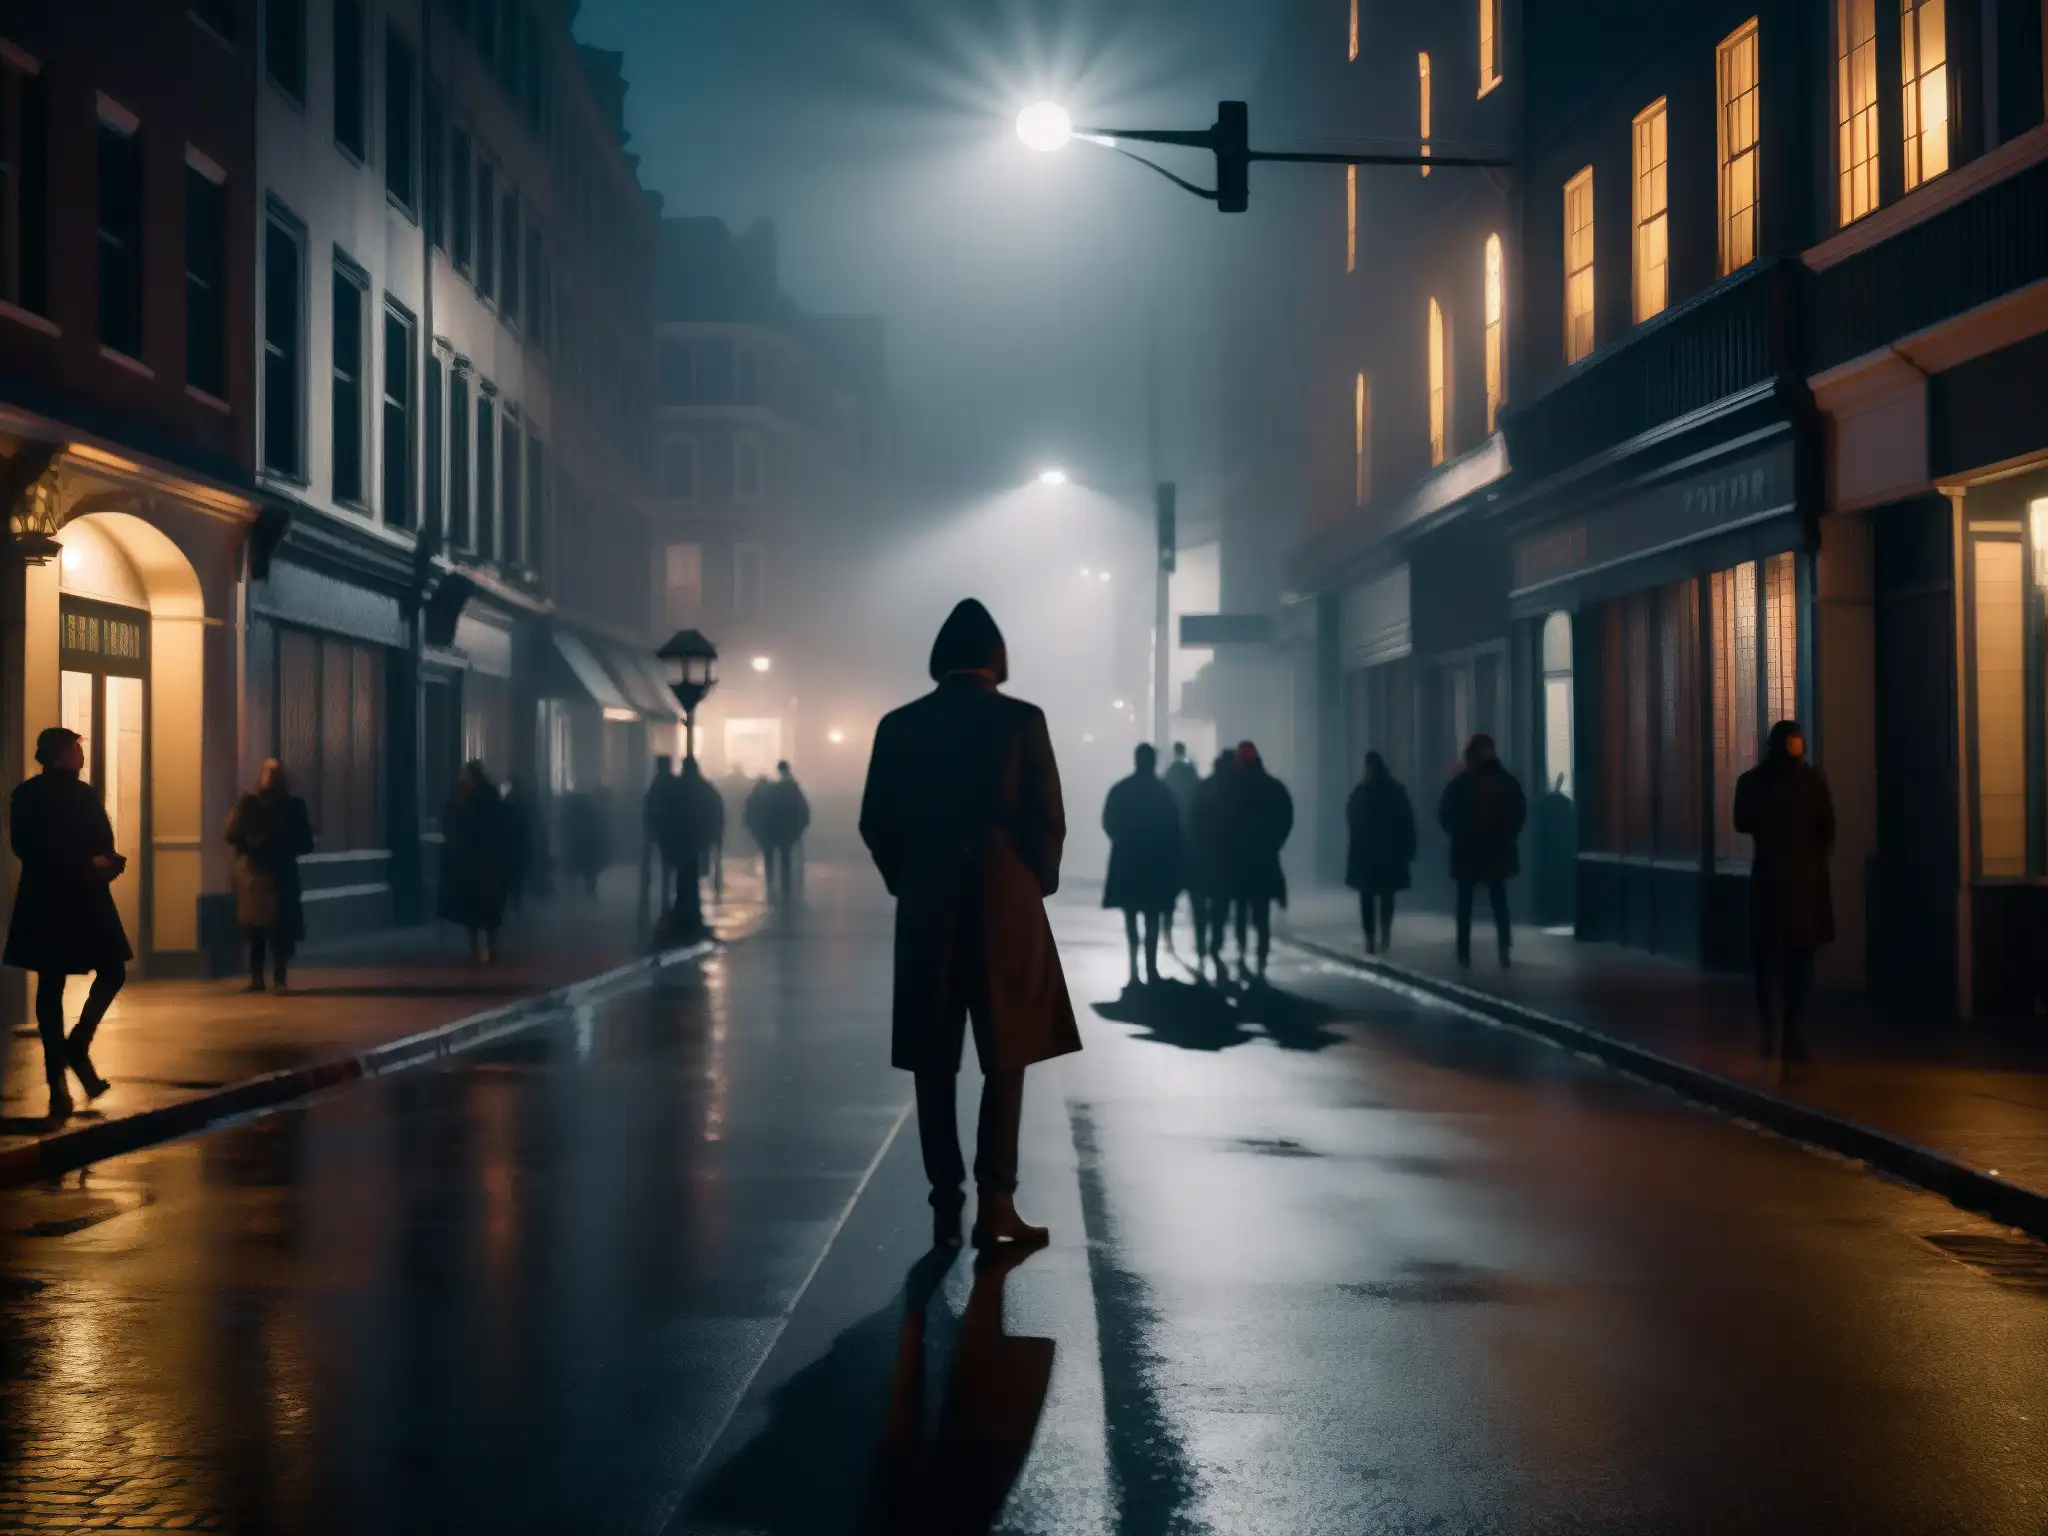 Una misteriosa calle nocturna de la ciudad con sombras alargadas, neblina y personas nerviosas, evocando la función de las leyendas urbanas